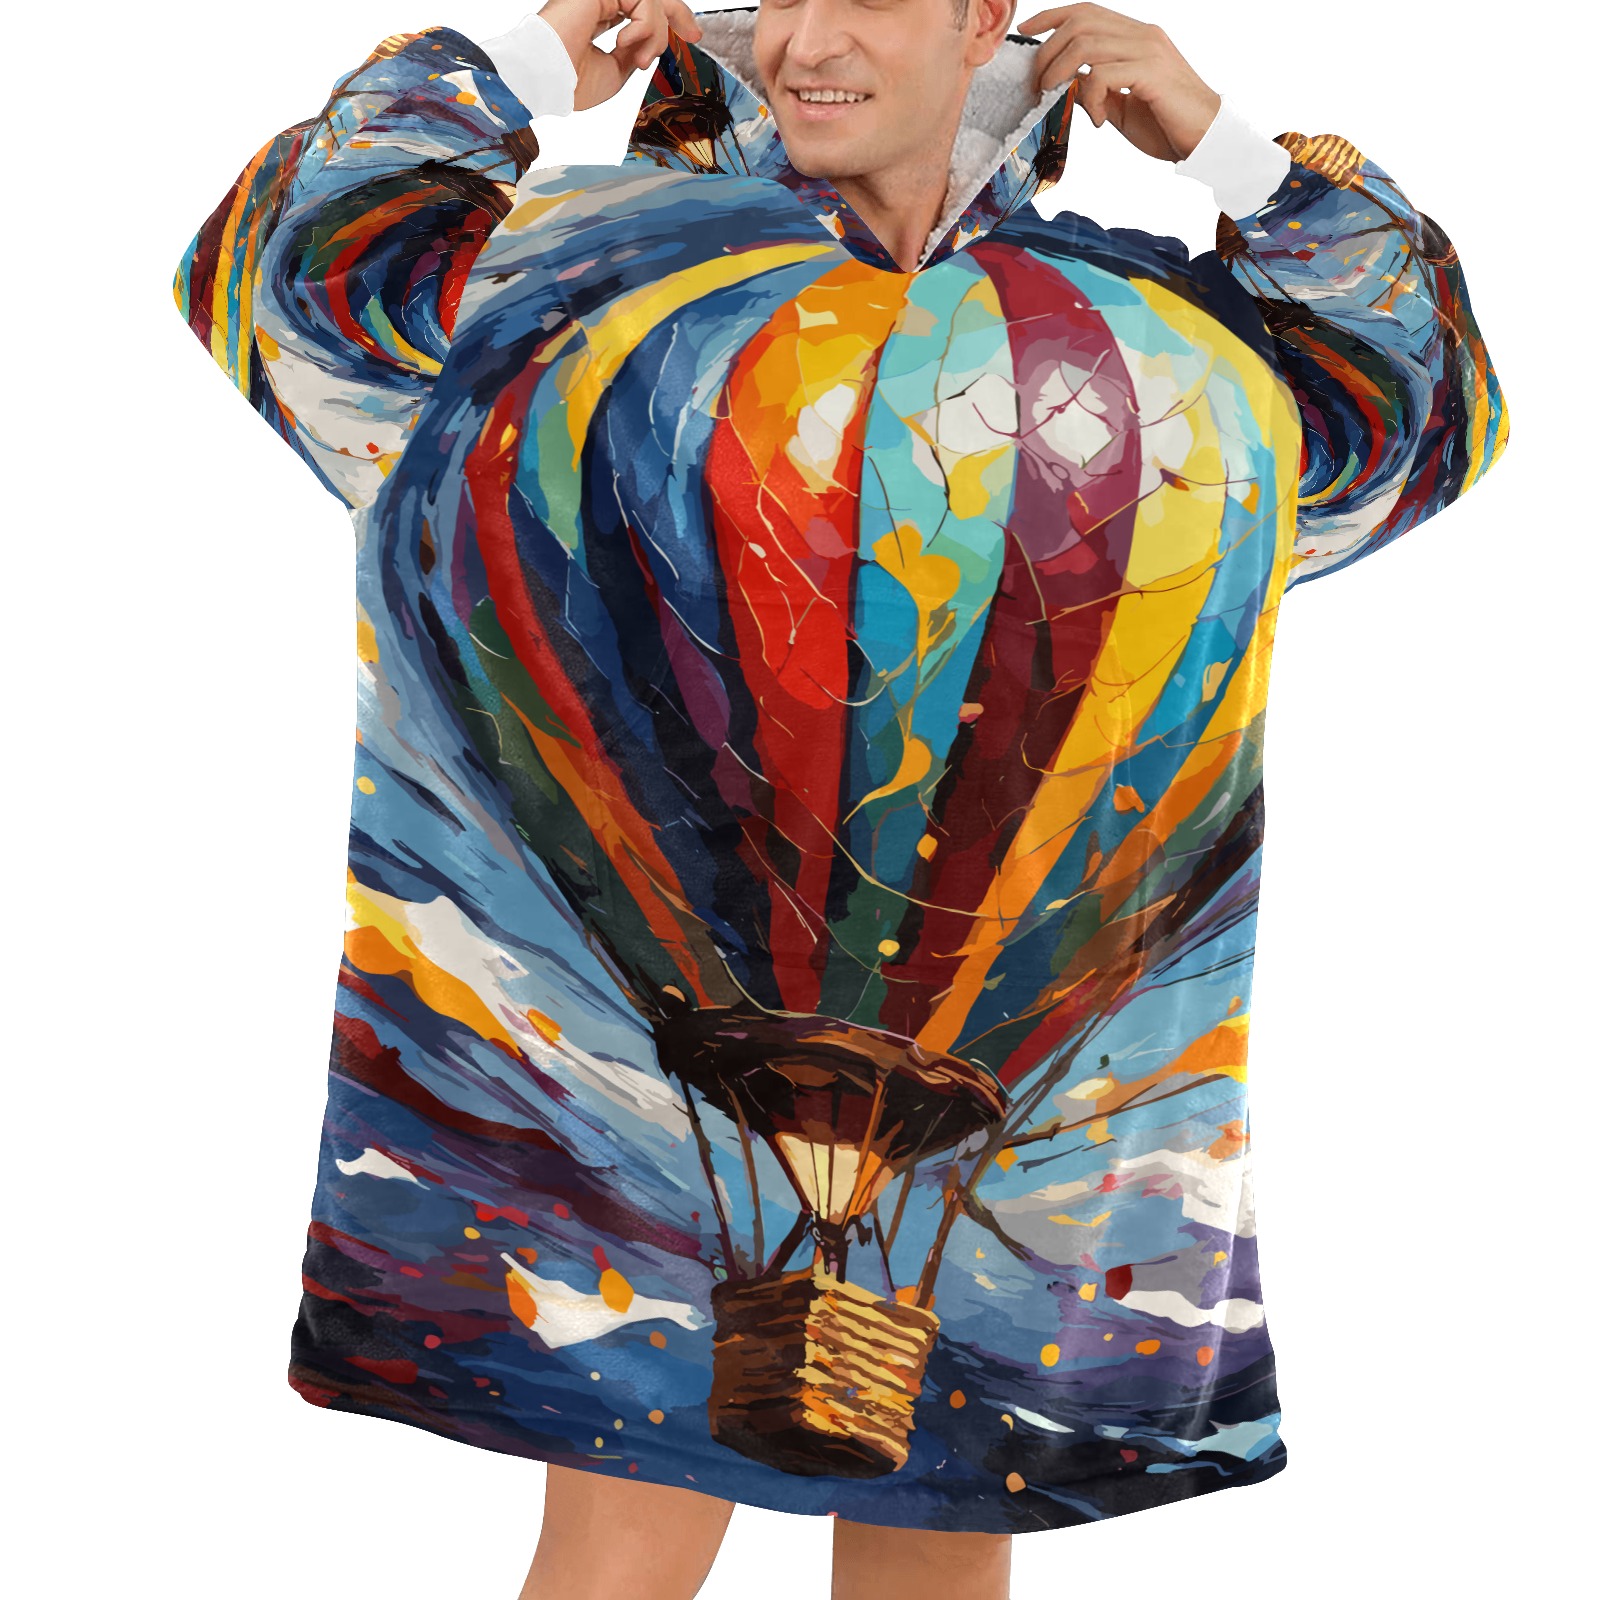 Imaginative hot air ballon beautiful colorful art. Blanket Hoodie for Men